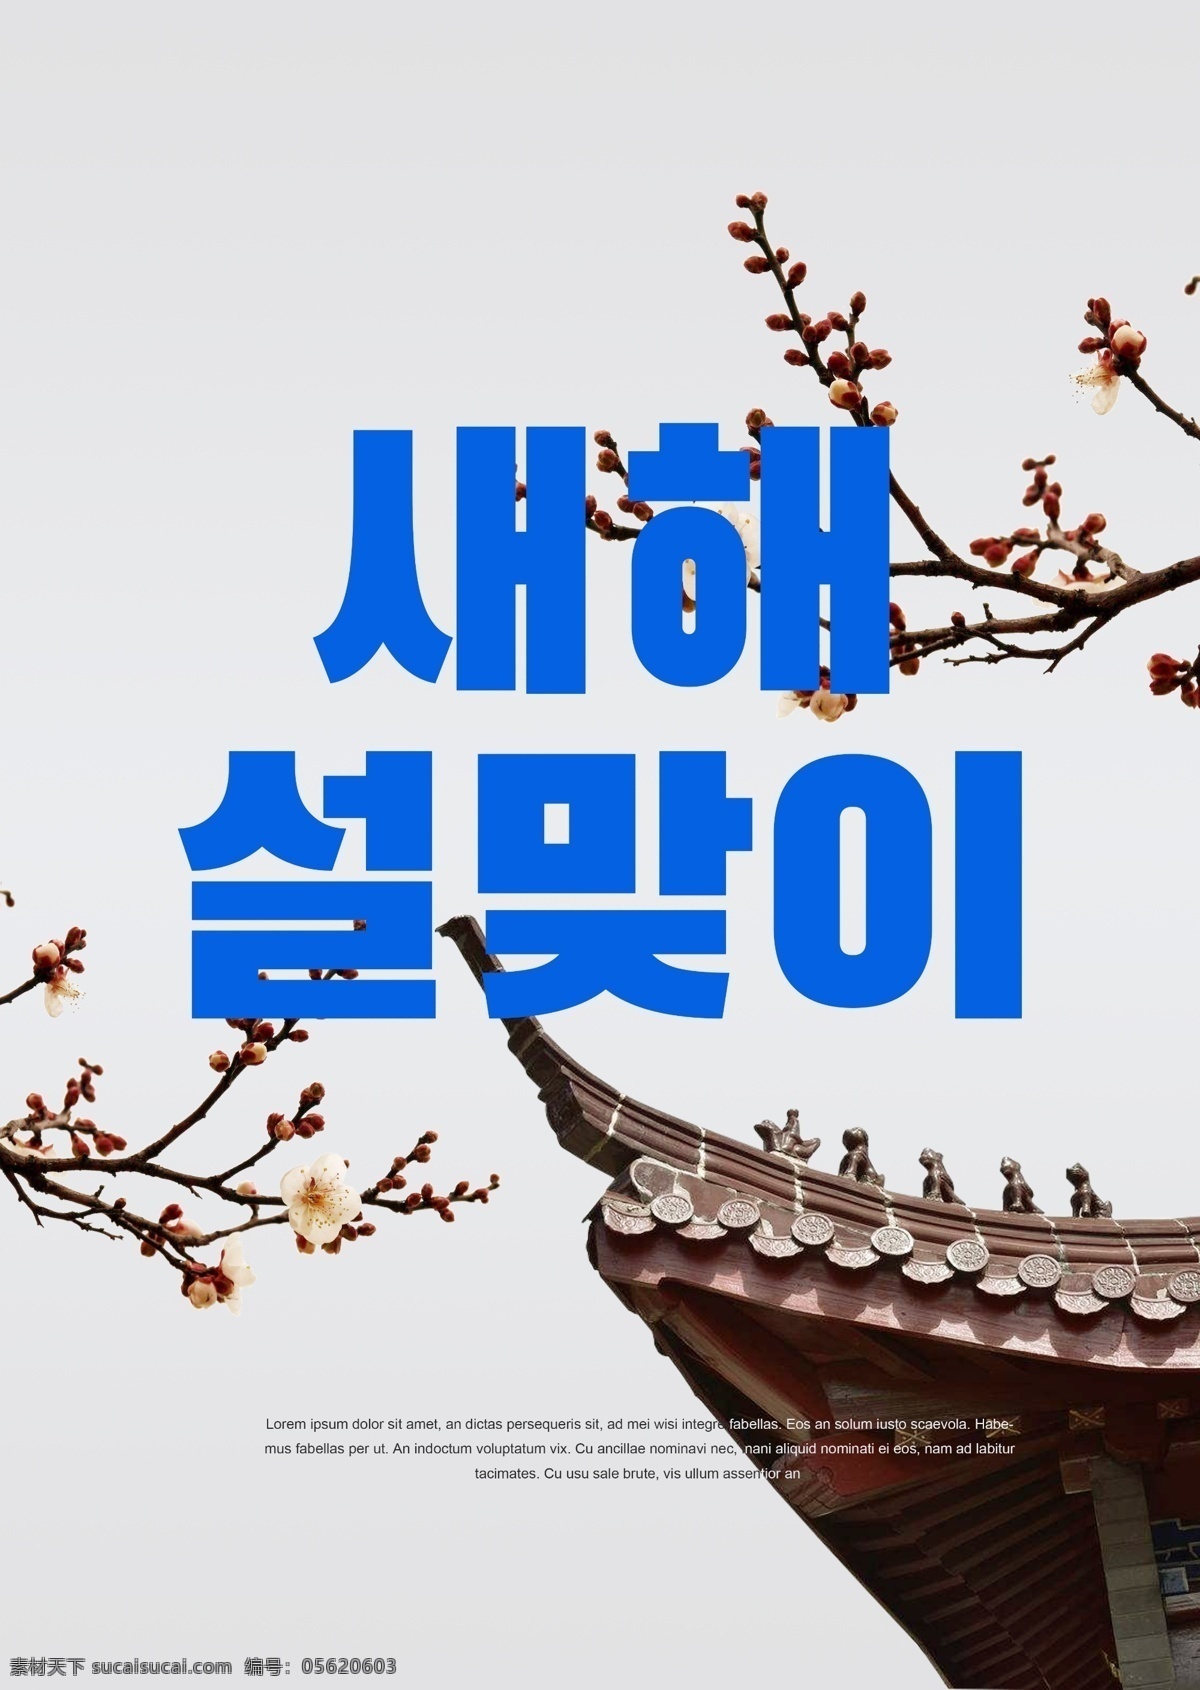 白色 时尚 现代 古建筑 欢迎 新年 海报 古典 极简主义 墨 冬季 朝鲜的 中文 英语 美丽 灰色 太阳 蓝色 绿色 建筑 华丽的 天空 梅花 科